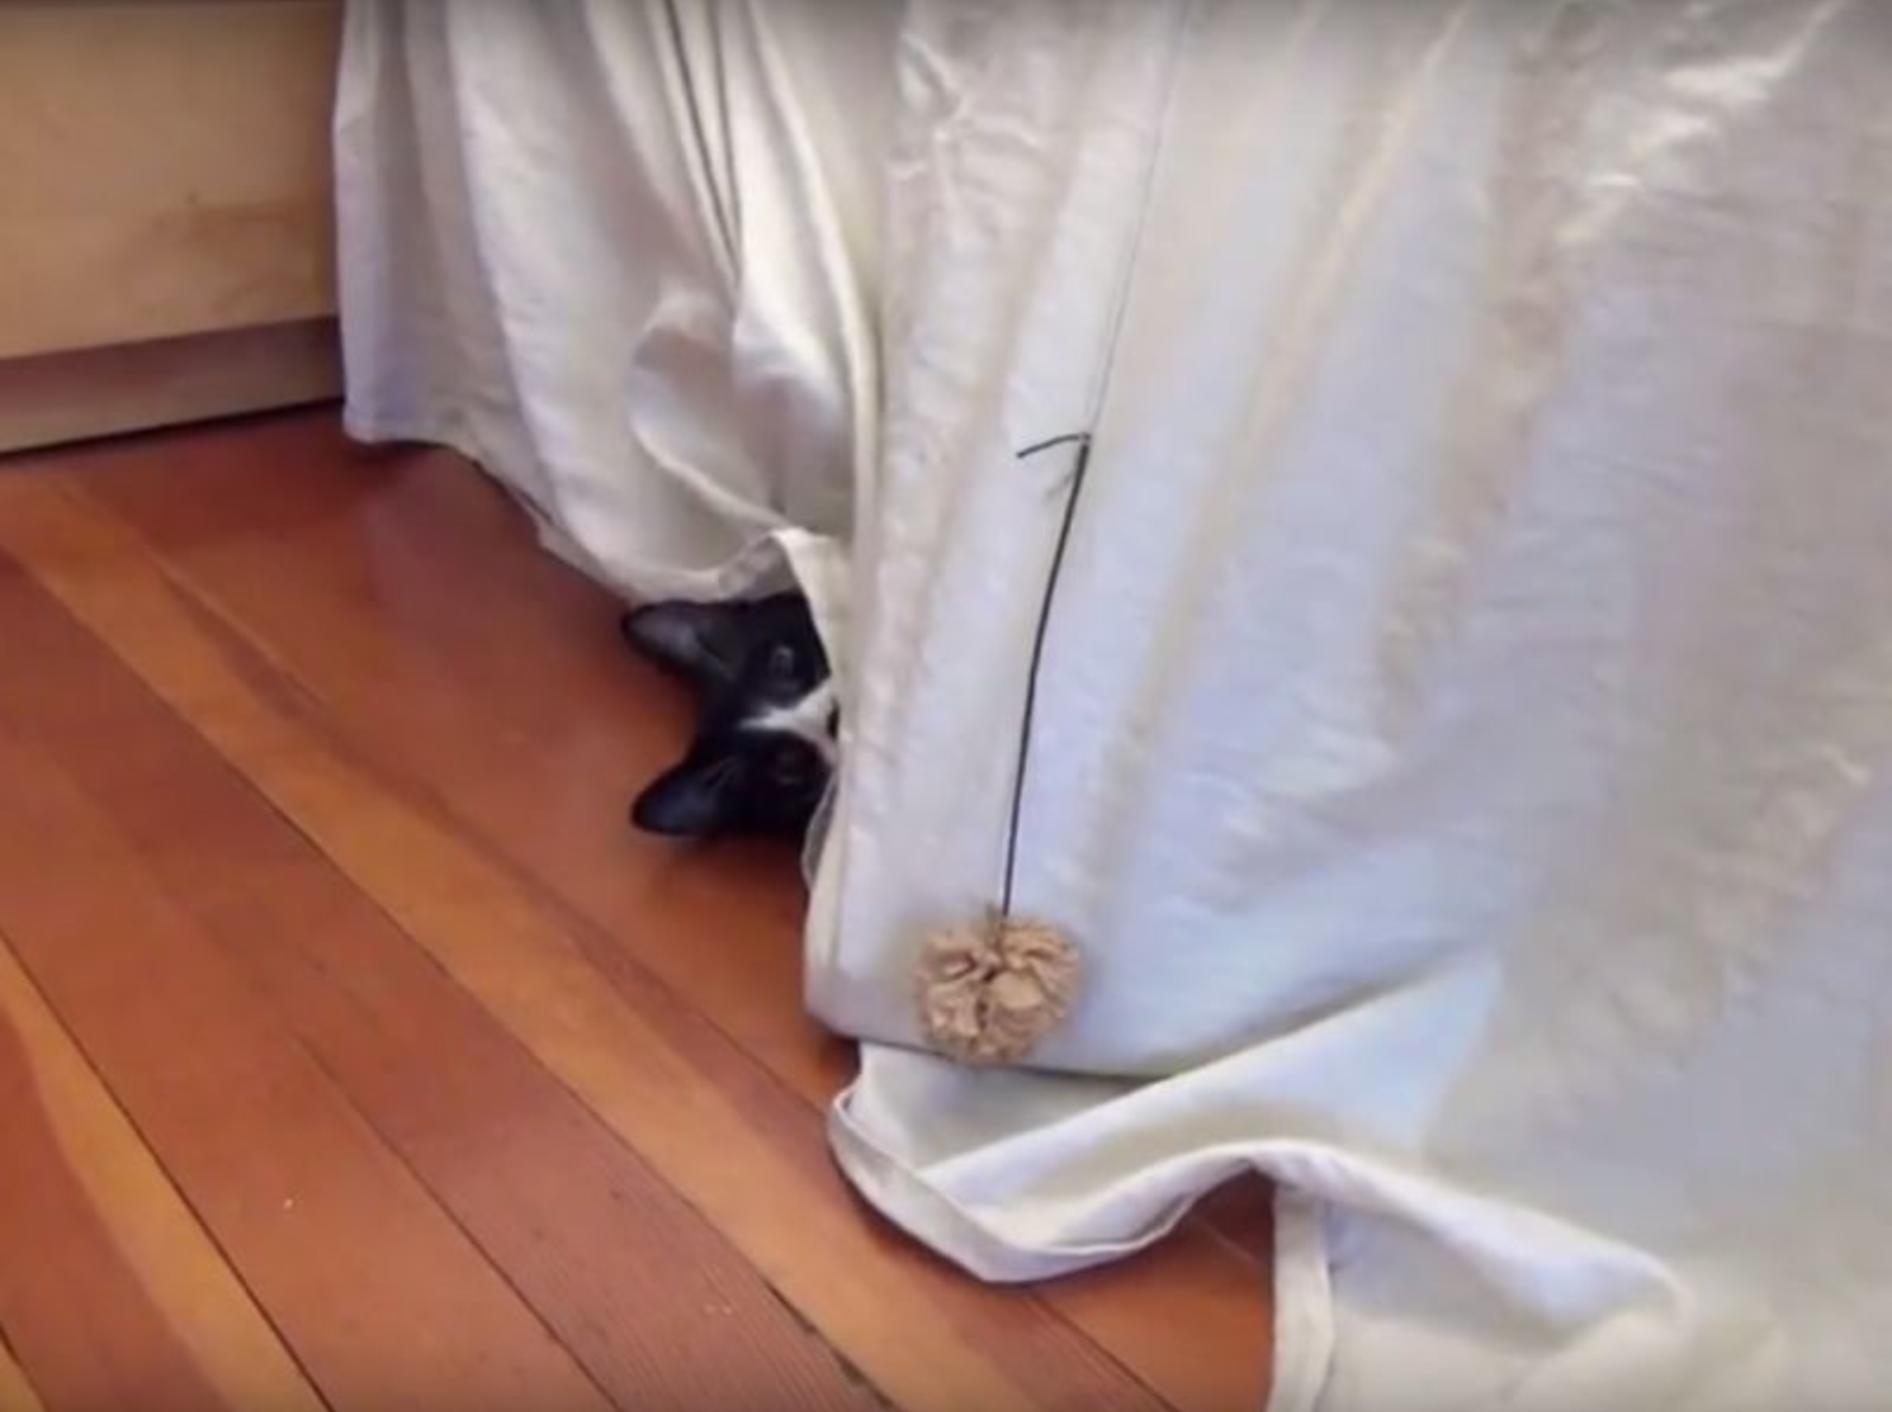 Kuckuck! Freche Katze lugt aus ihrem Versteck hervor – YouTube / DrNworb's KitsCats